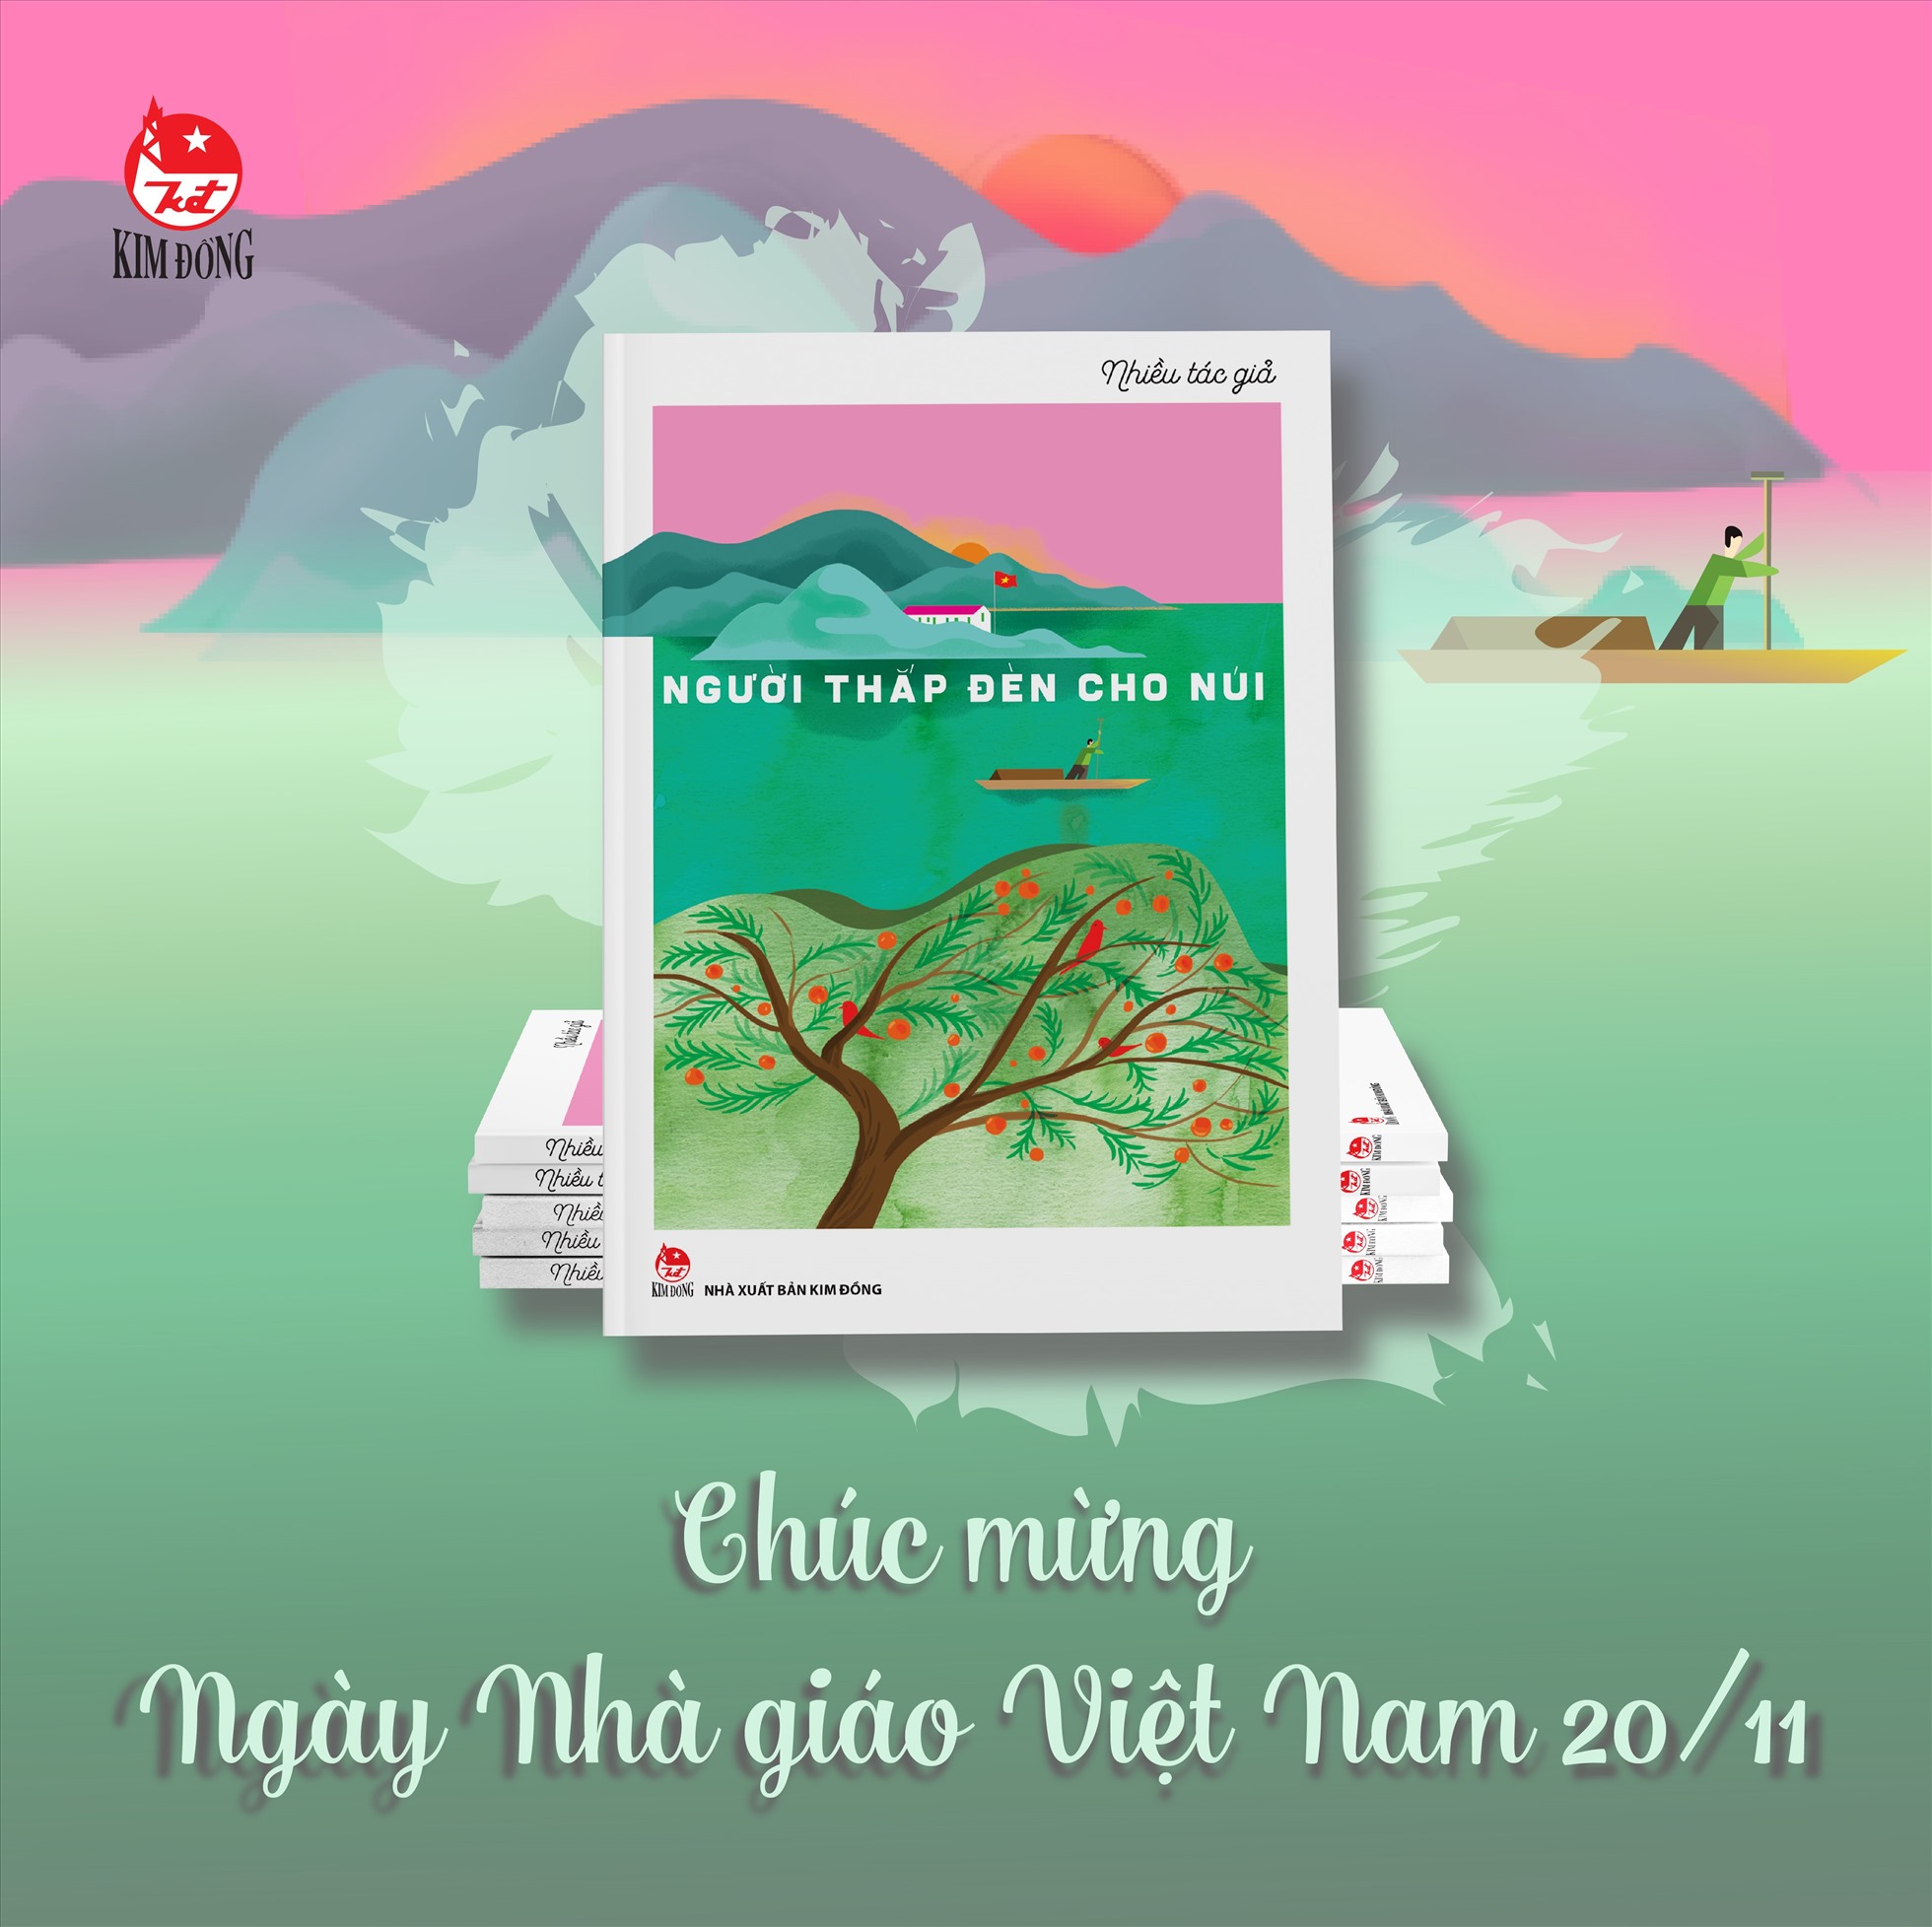 Cuốn sách như một lời tri ân đến thầy cô nhân ngày Nhà giáo Việt Nam 20.11. Ảnh: Kim Đồng